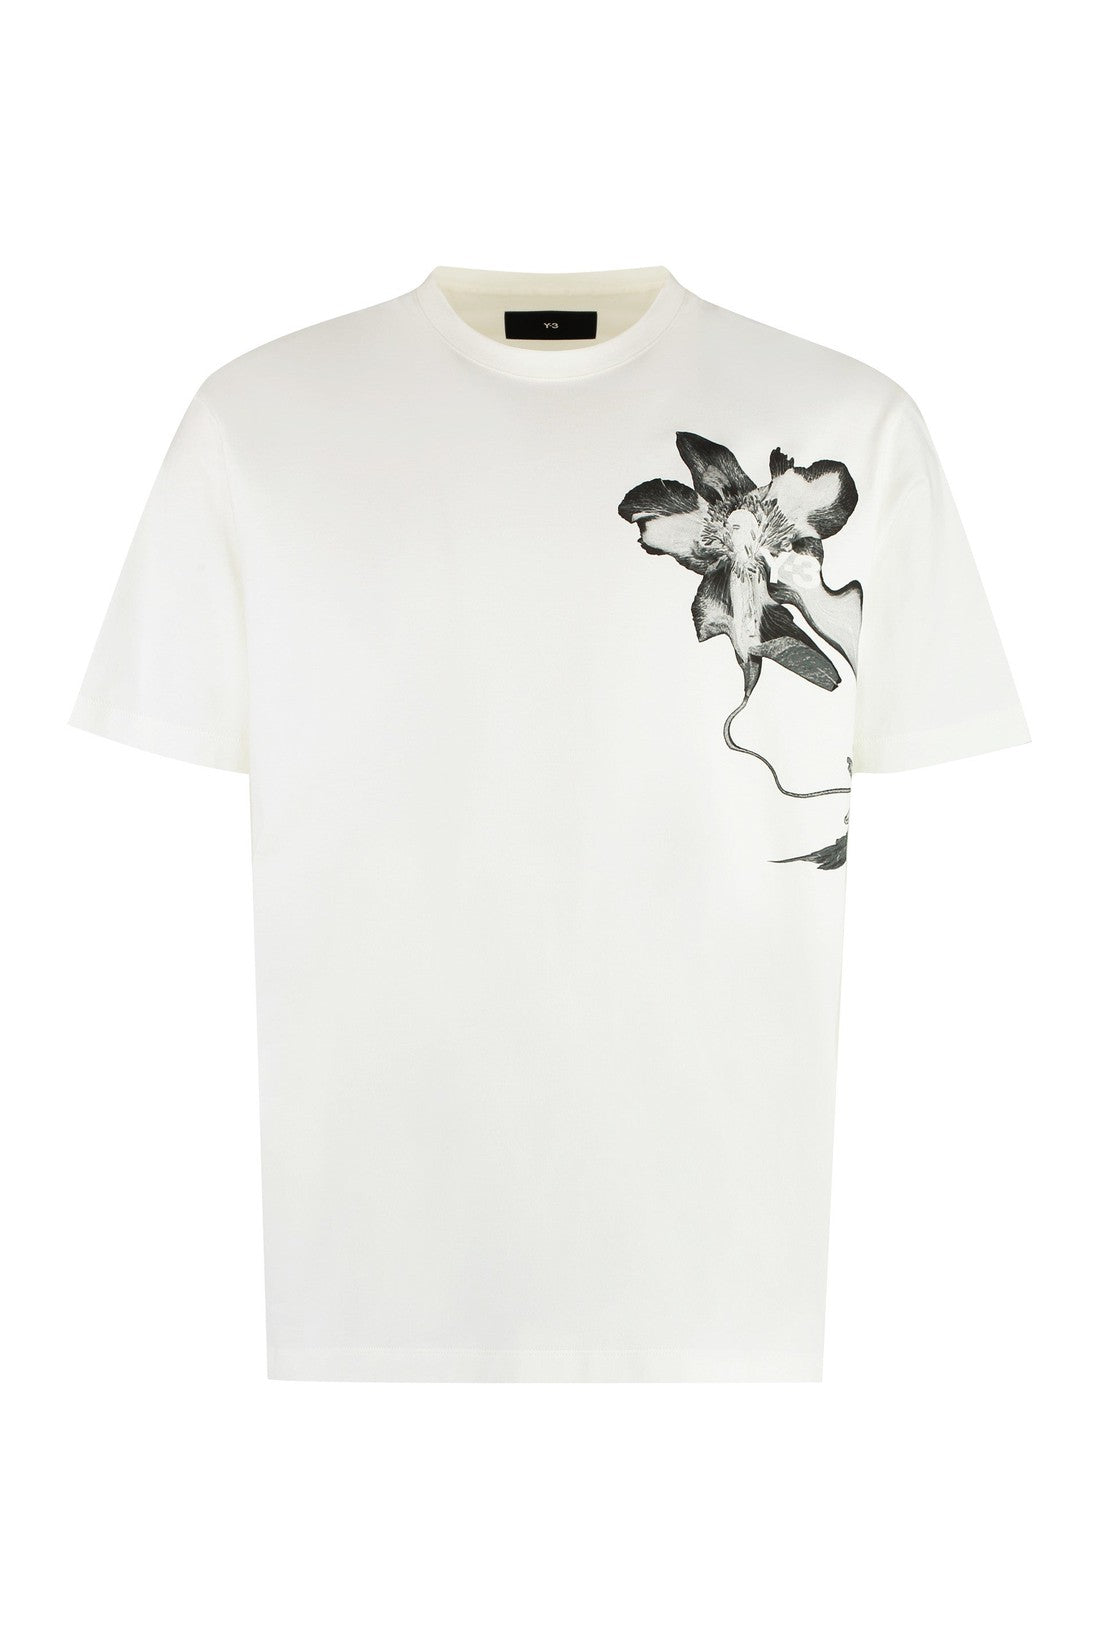 adidas Y-3-OUTLET-SALE-Cotton crew-neck T-shirt-ARCHIVIST